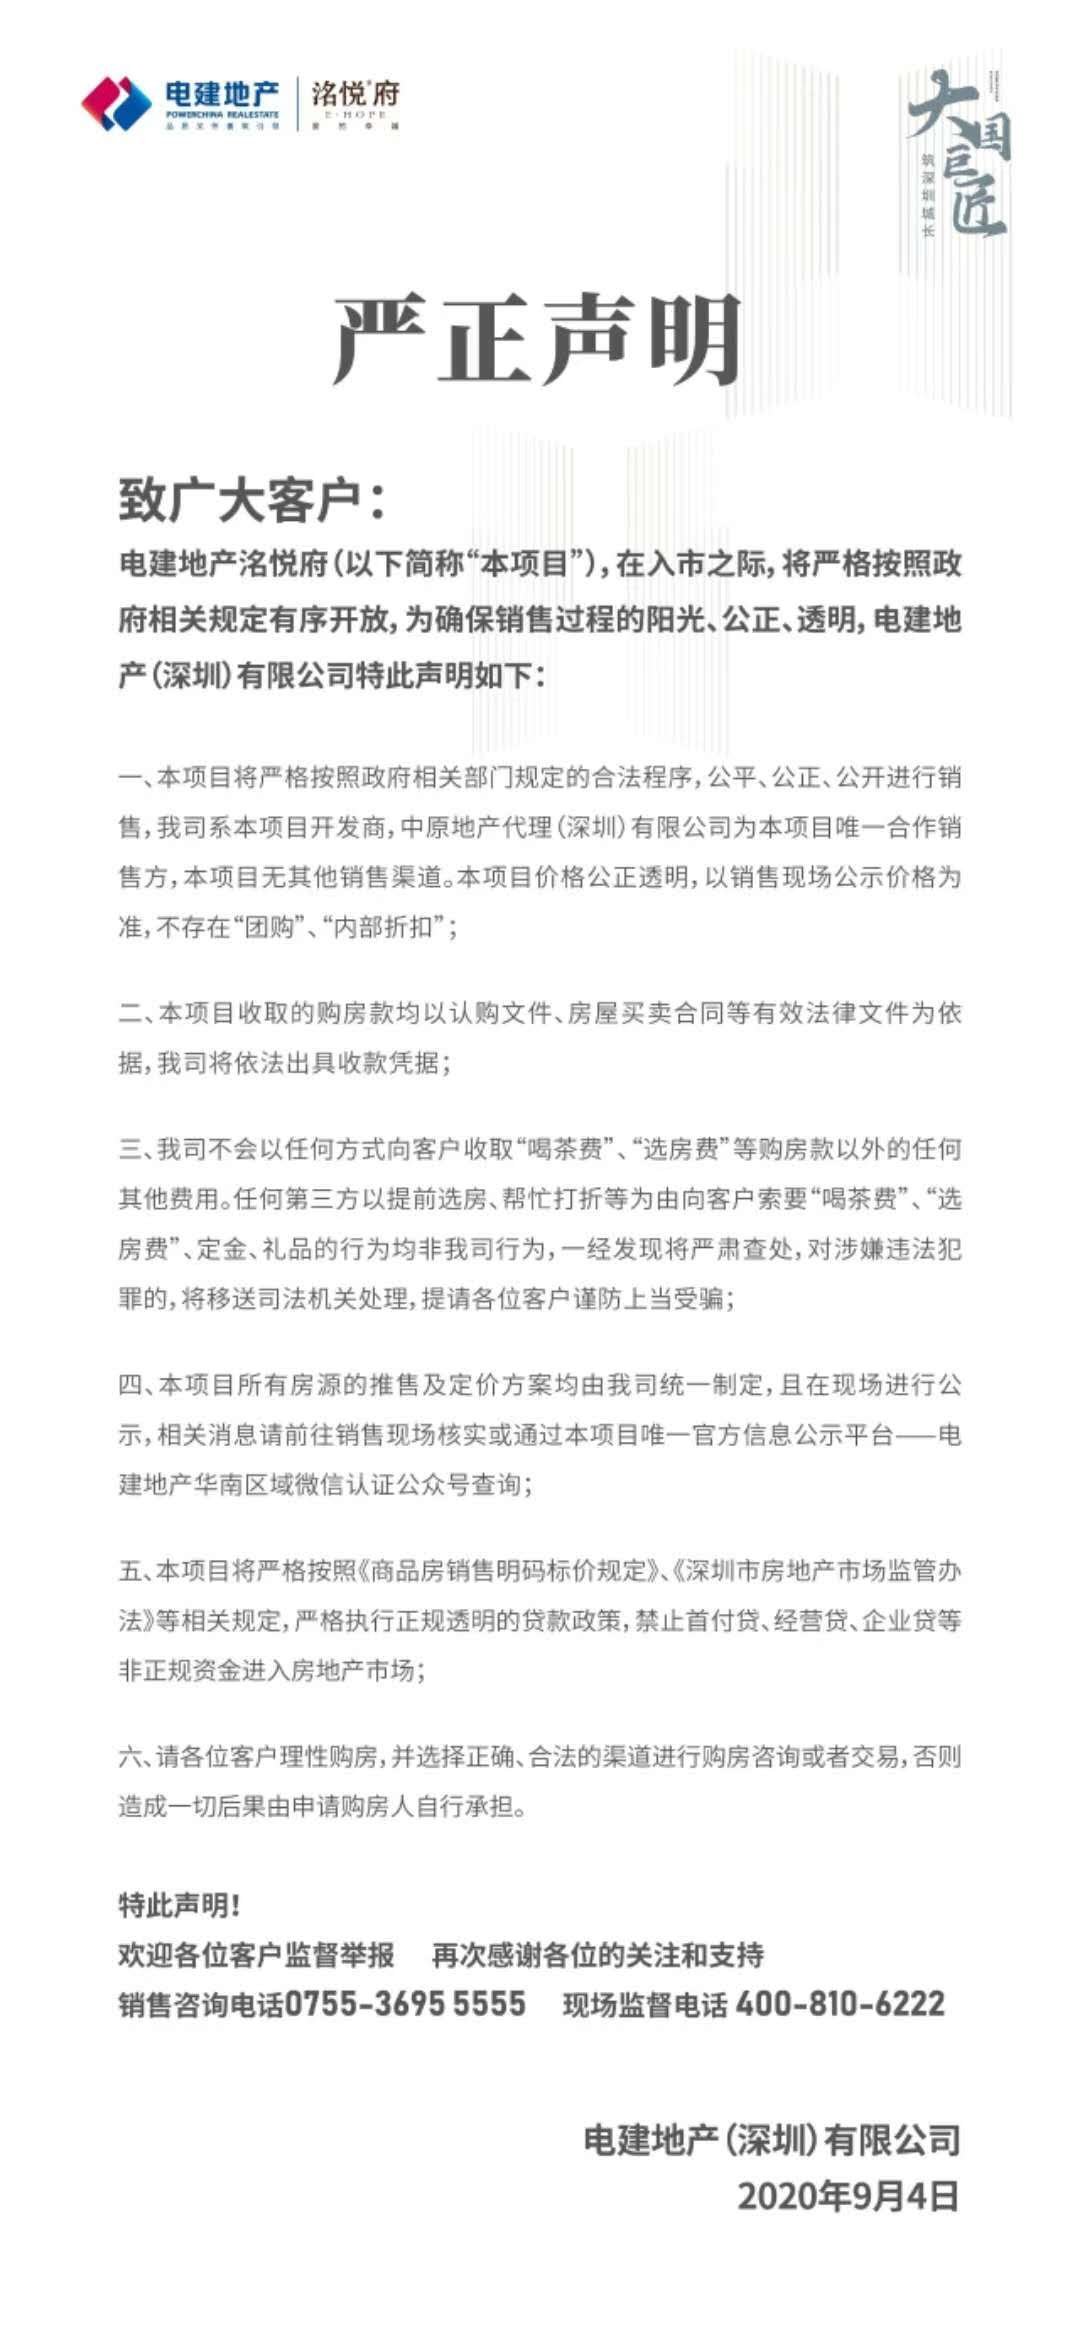 快讯|电建光明项目官方声明 不存在“喝茶费”、“内部折扣”